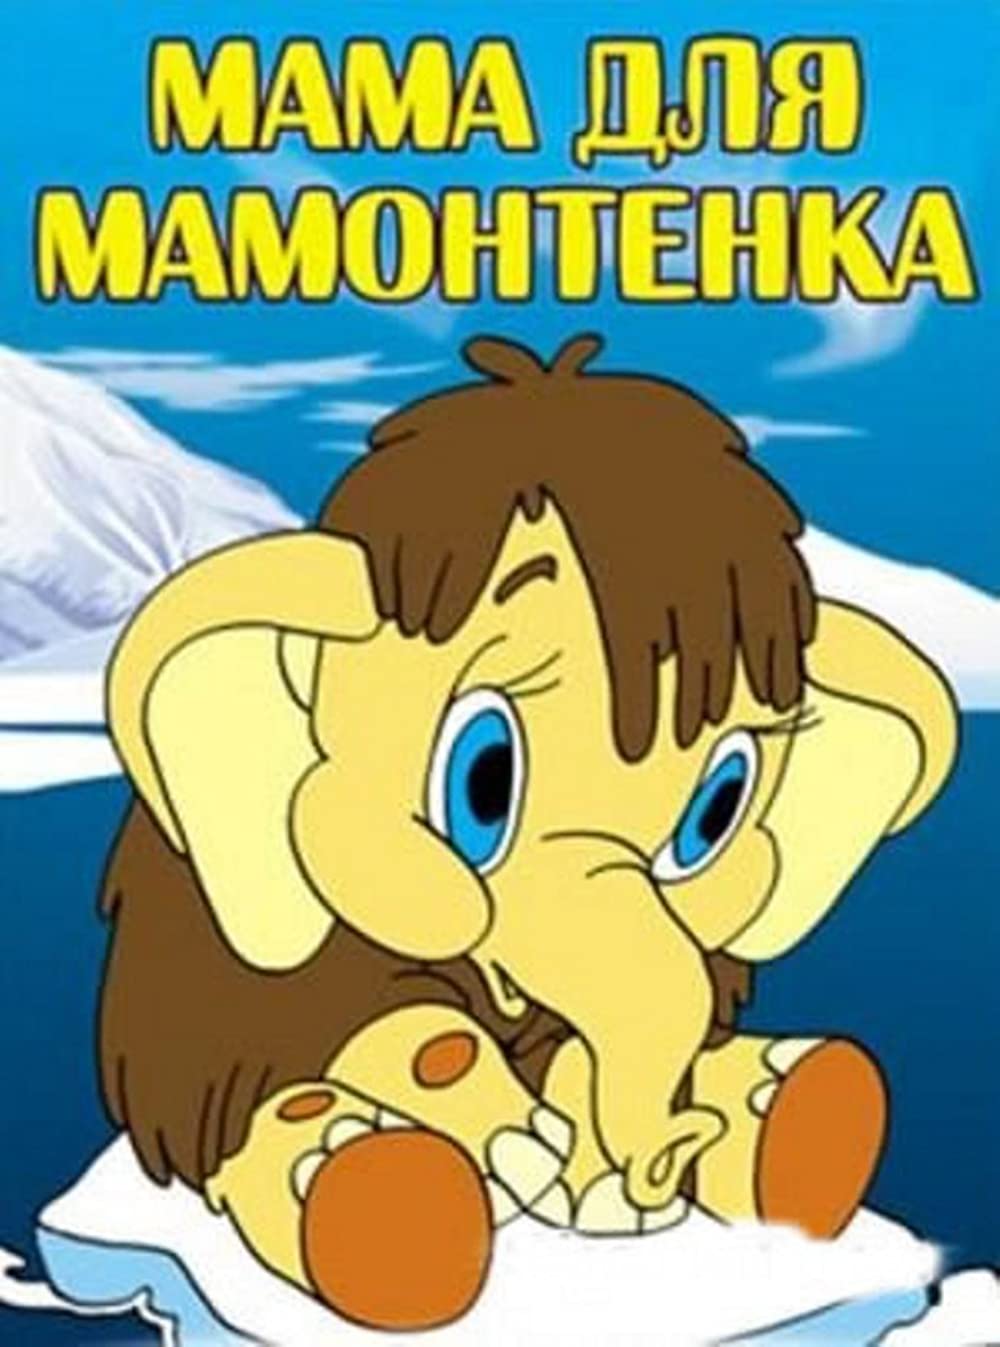 "Мама для мамонтенка" (Экран, 1981 г.)Советский мультфильм для детей.Смотрите этот мультфильм производства СССР в хорошем качестве бесплатно онлайн.